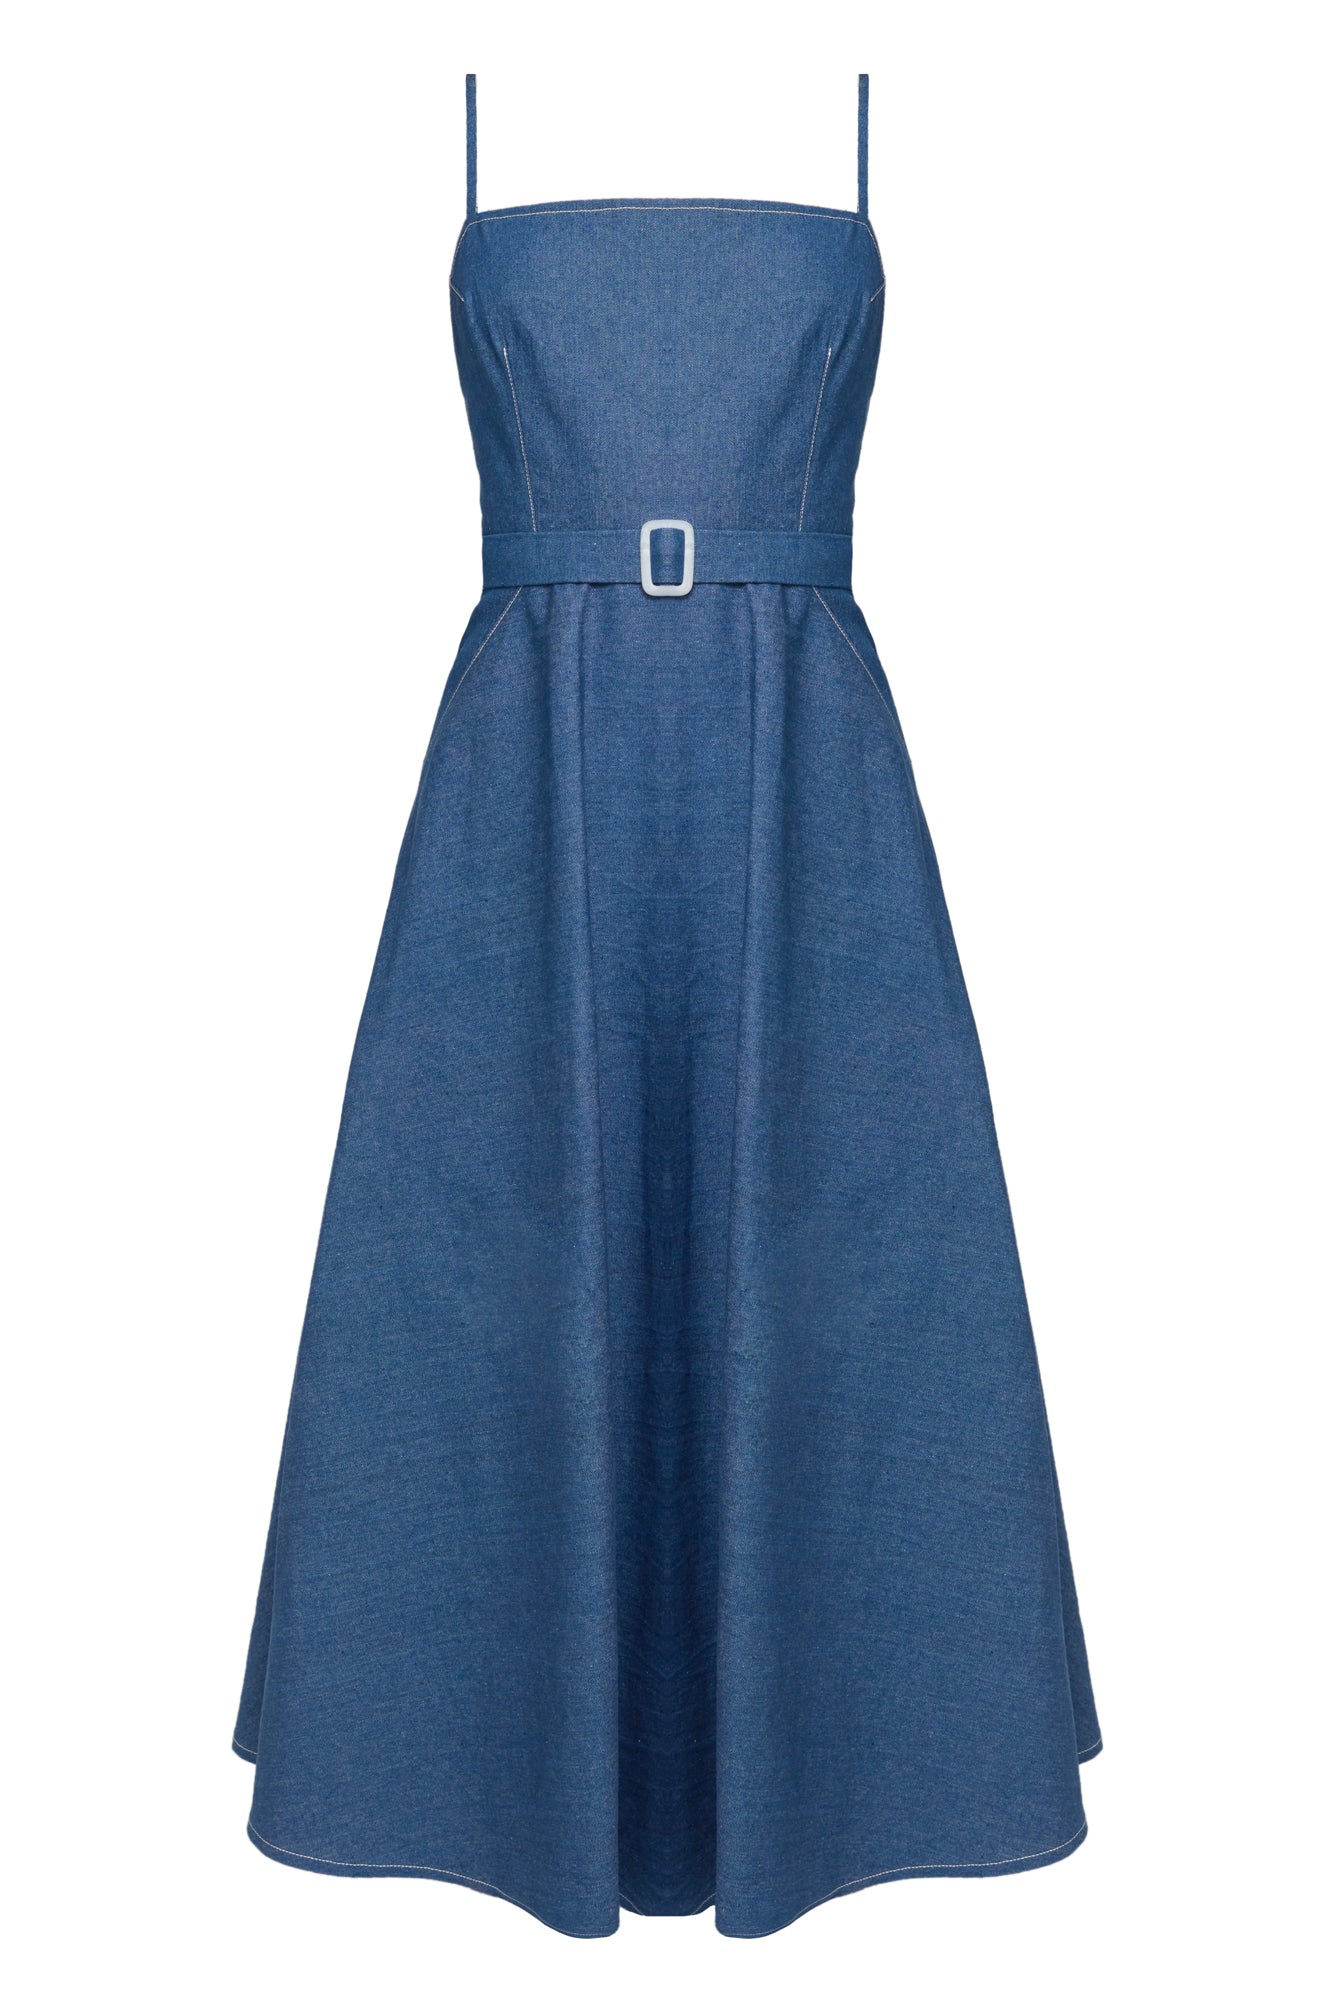 Women’s Matissa Blue Denim Dress With Retro Circle Skirt Medium Undress